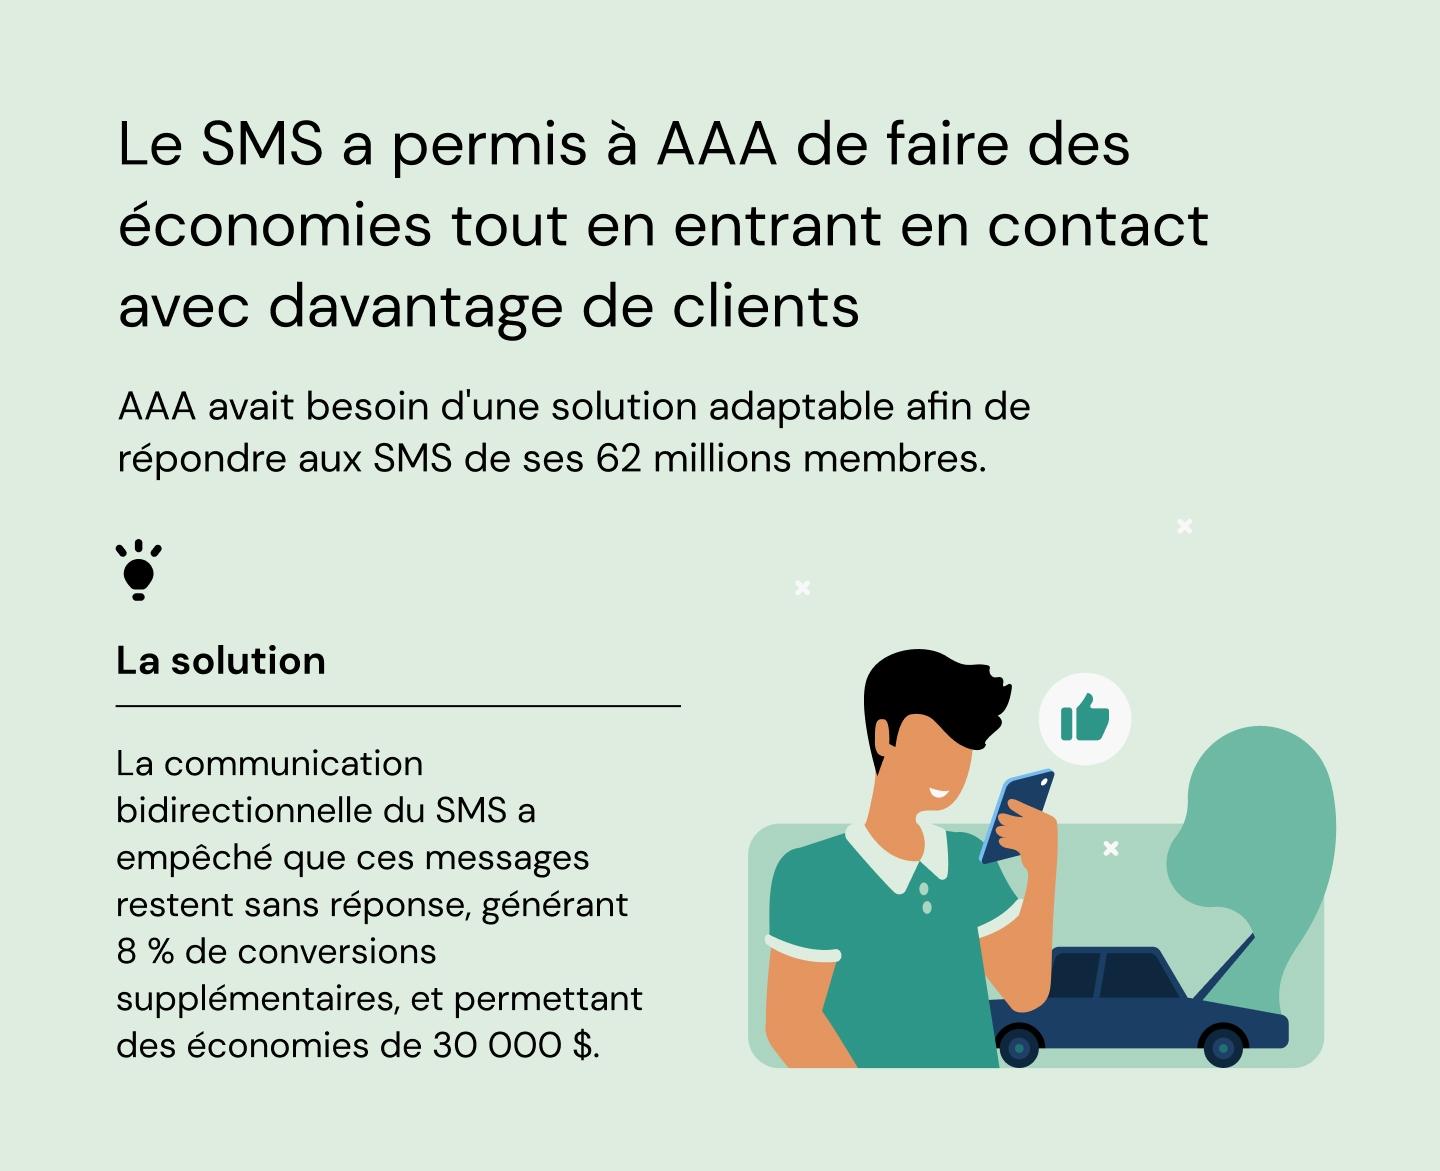 Le SMS a permis à AAA de faire des économies tout en entrant en contact avec davantage de clients